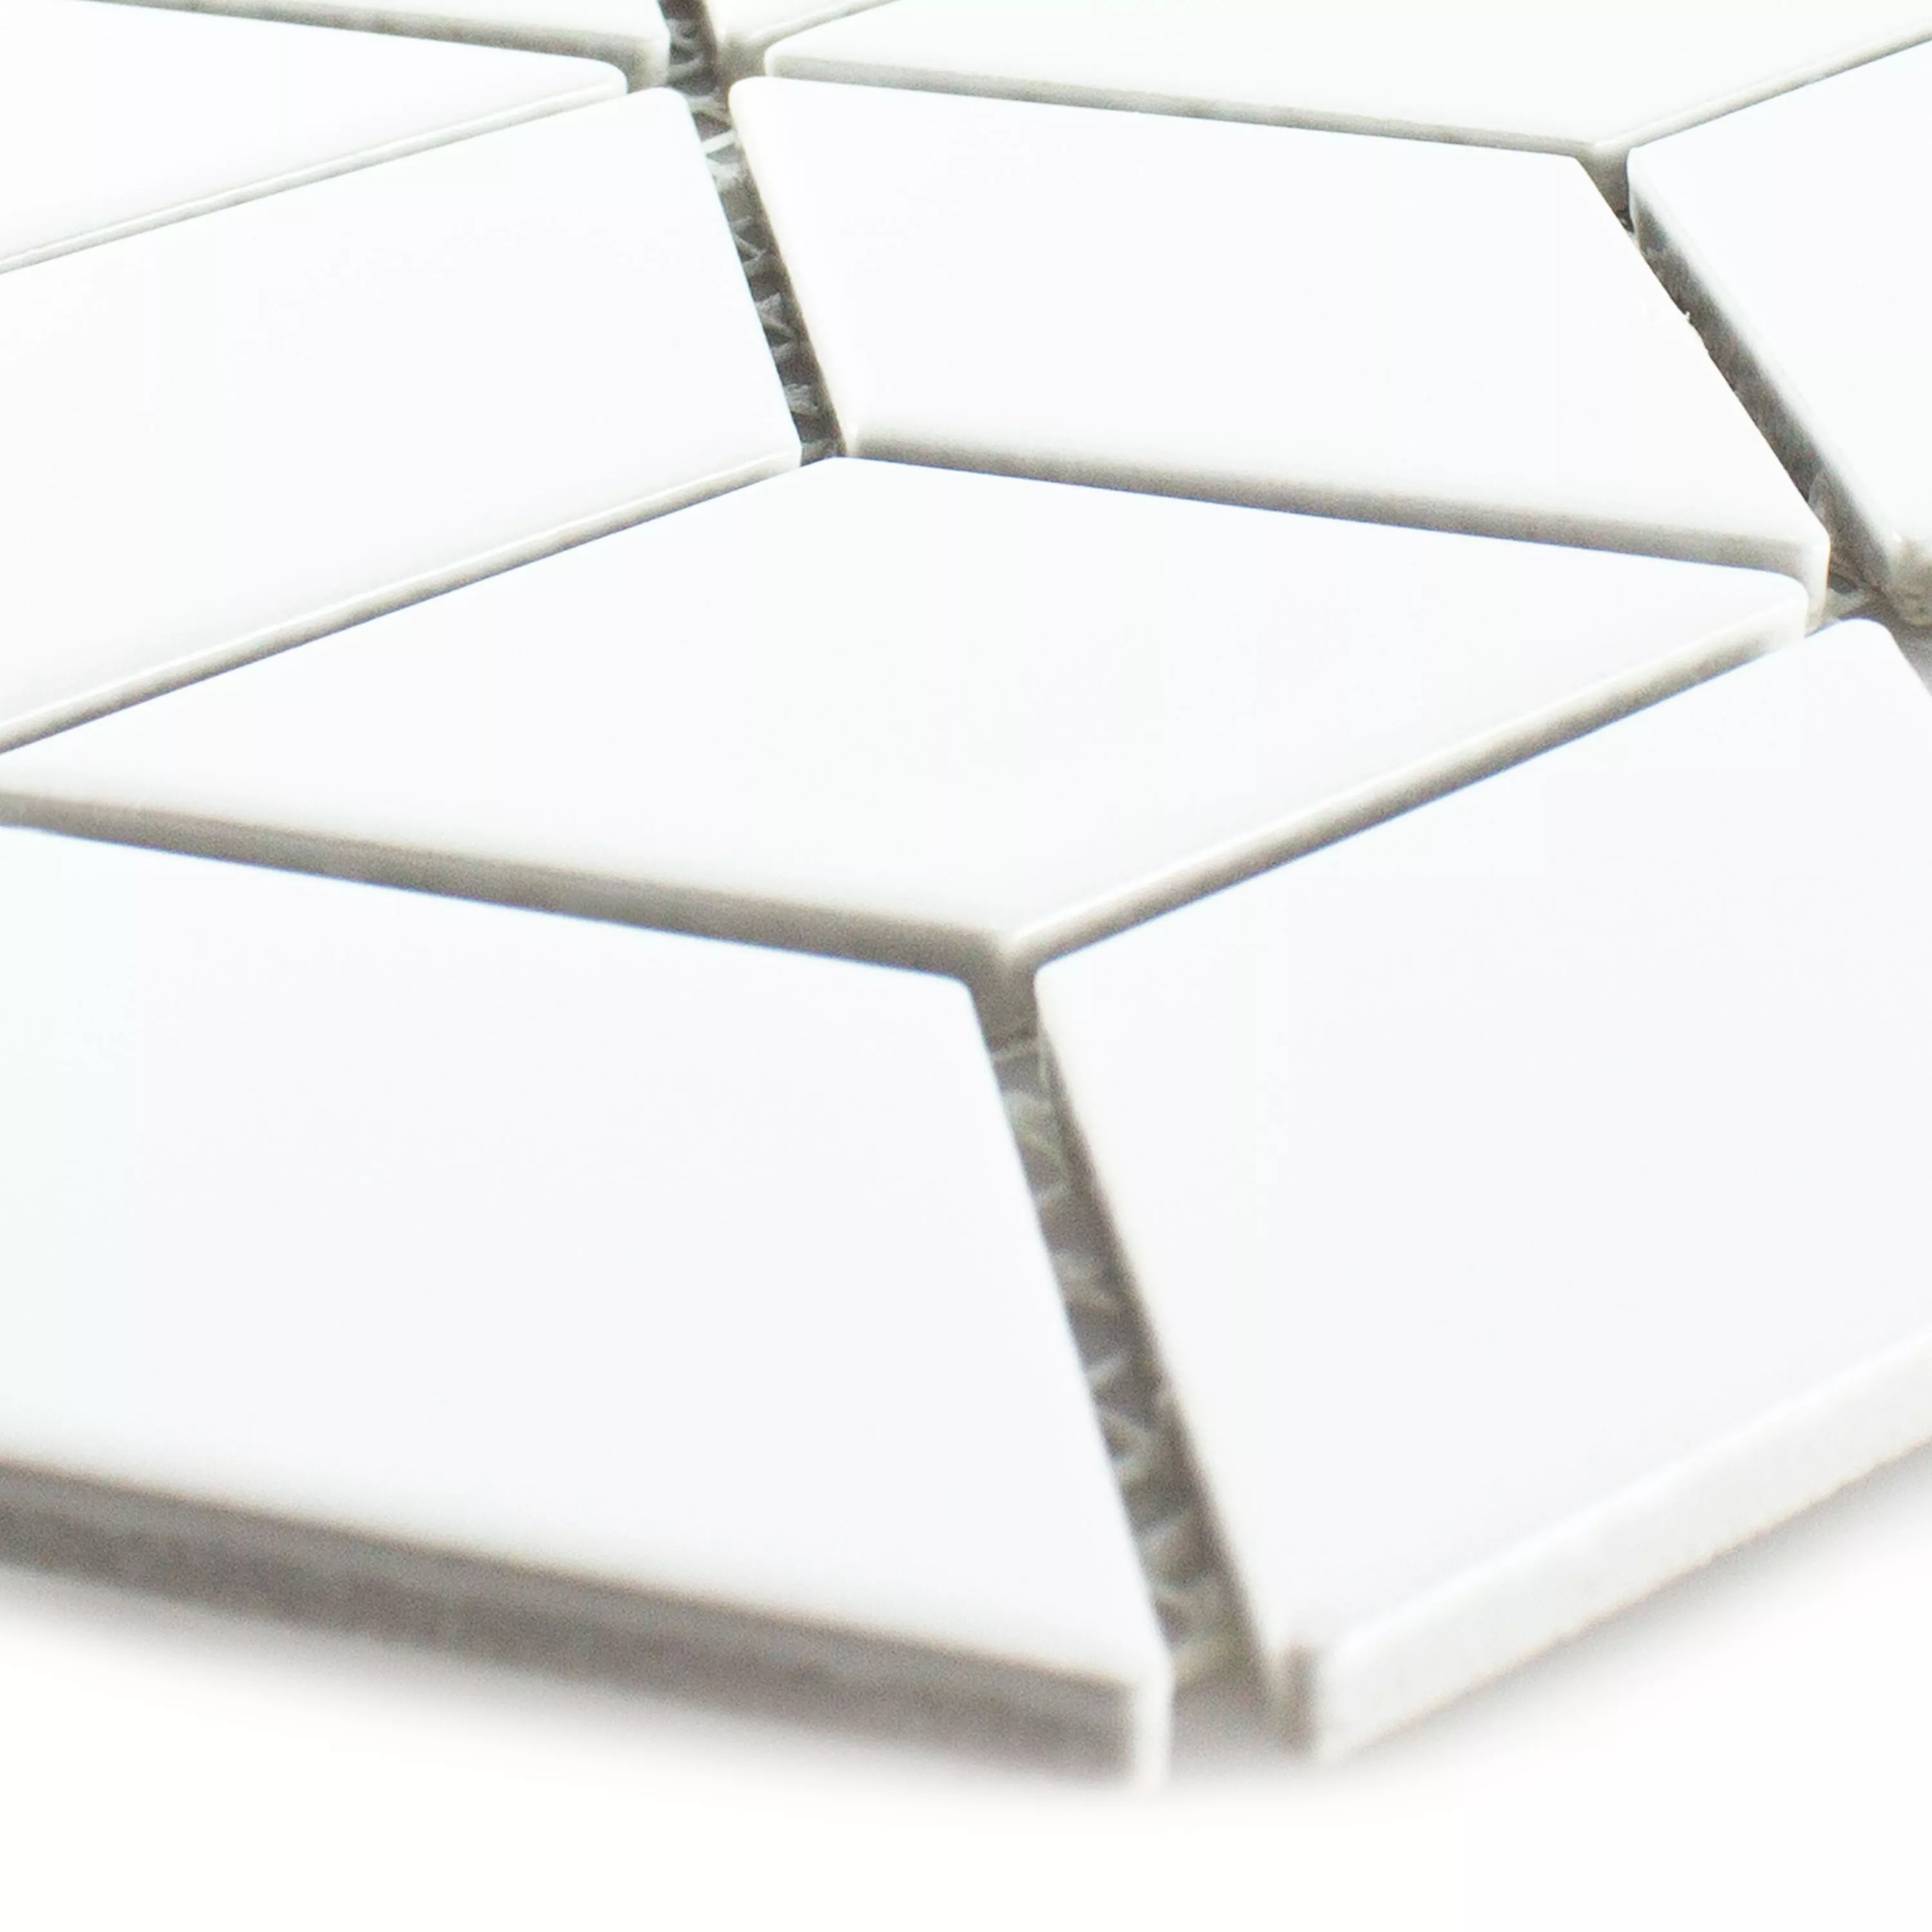 Échantillon Céramique Mosaïque Carrelage Cavalier 3D Cubes Mat Blanc